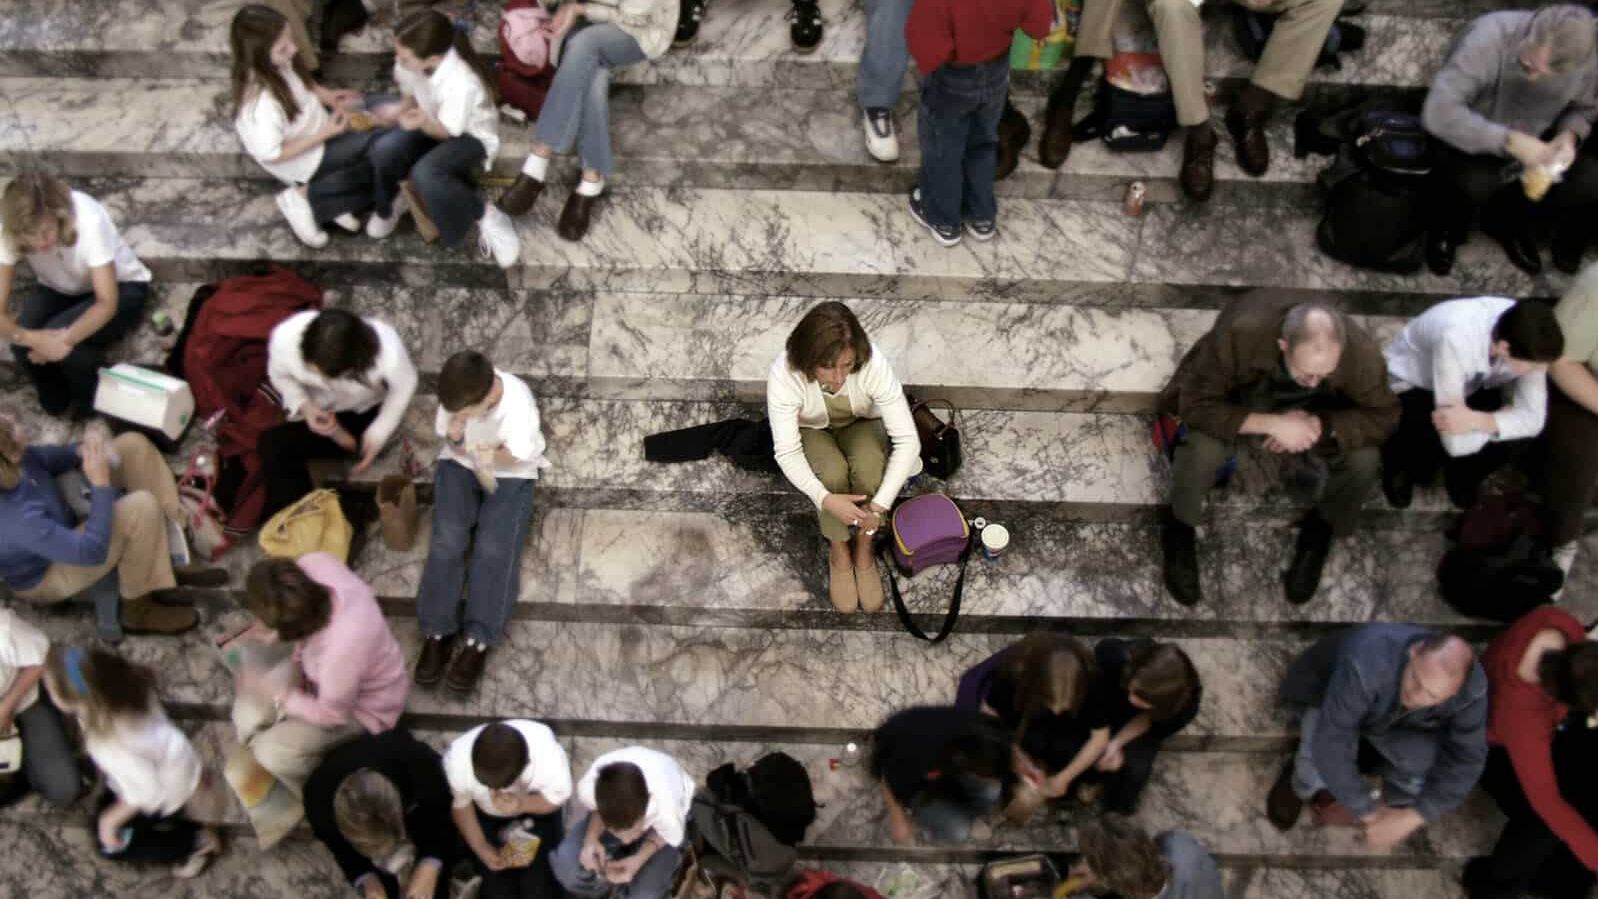 Gruppe von Menschen sitzen auf einer Treppe, eine Person sitzt isoliert